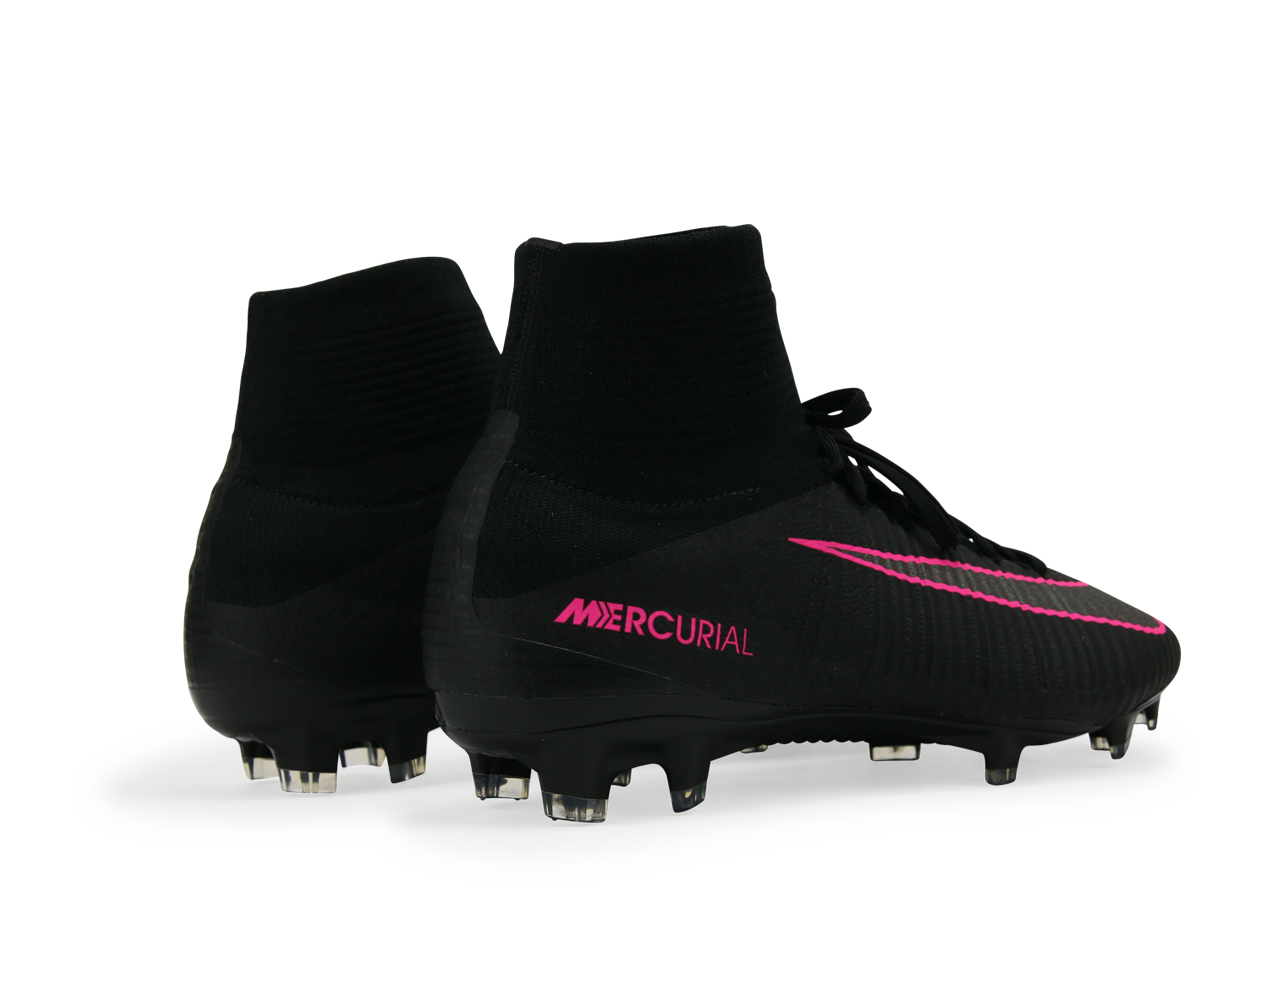 absolutte Genre reference Nike Men's Mercurial Superfly V FG Black/Black/Pink – Azteca Soccer